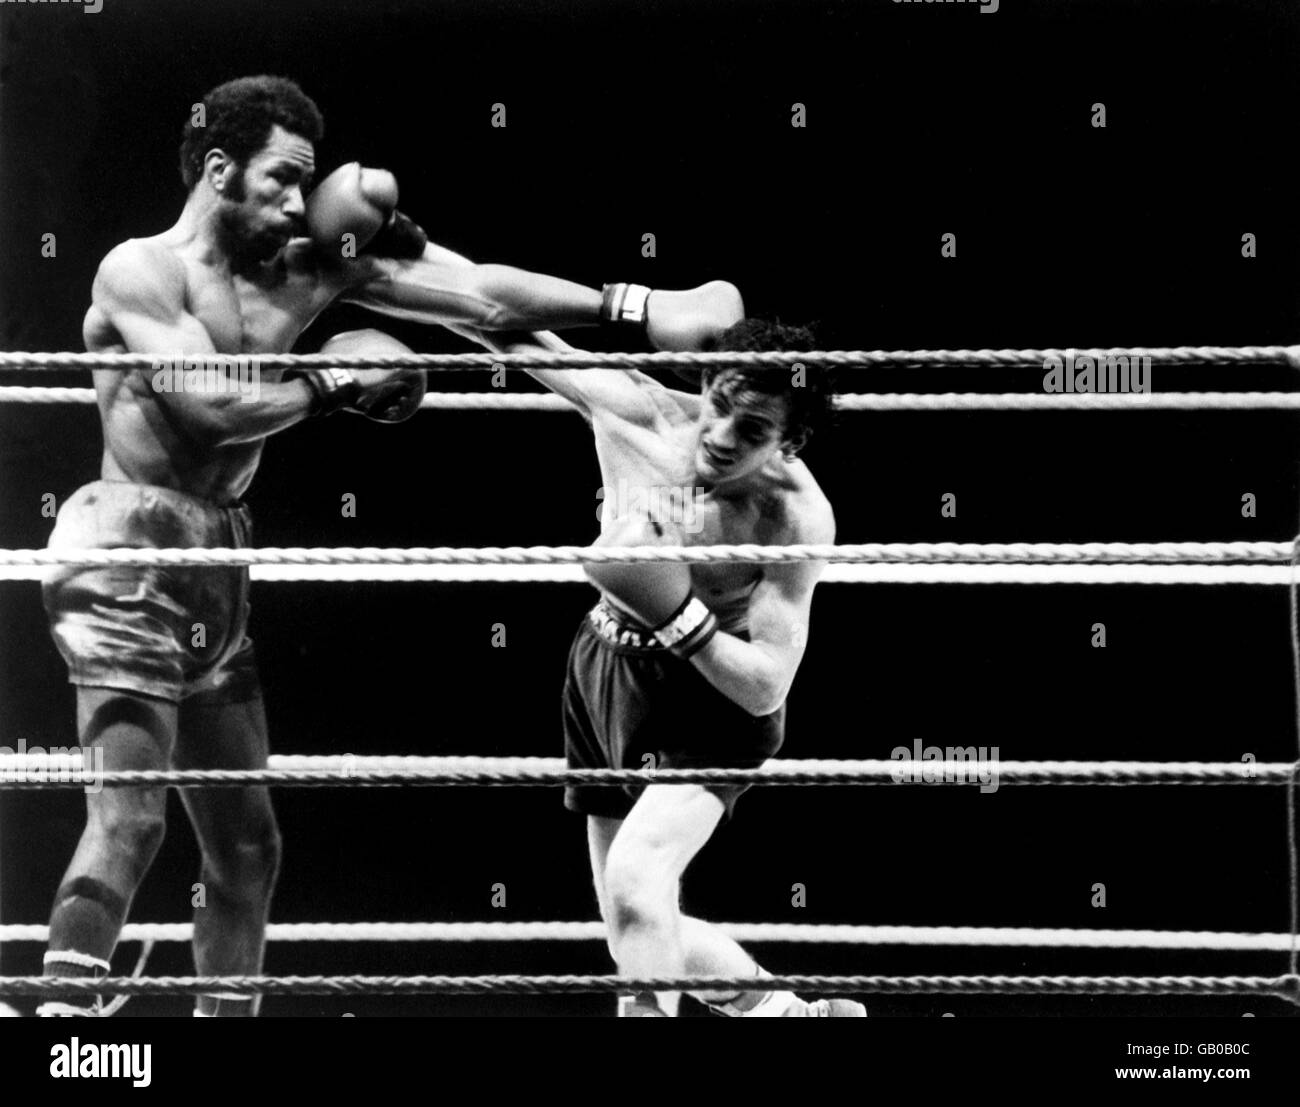 Barry McGuigan (r), de Irlanda, y Eusebio Pedroza (l), de Panamá Golpes en su lucha por el título de la WBA Foto de stock